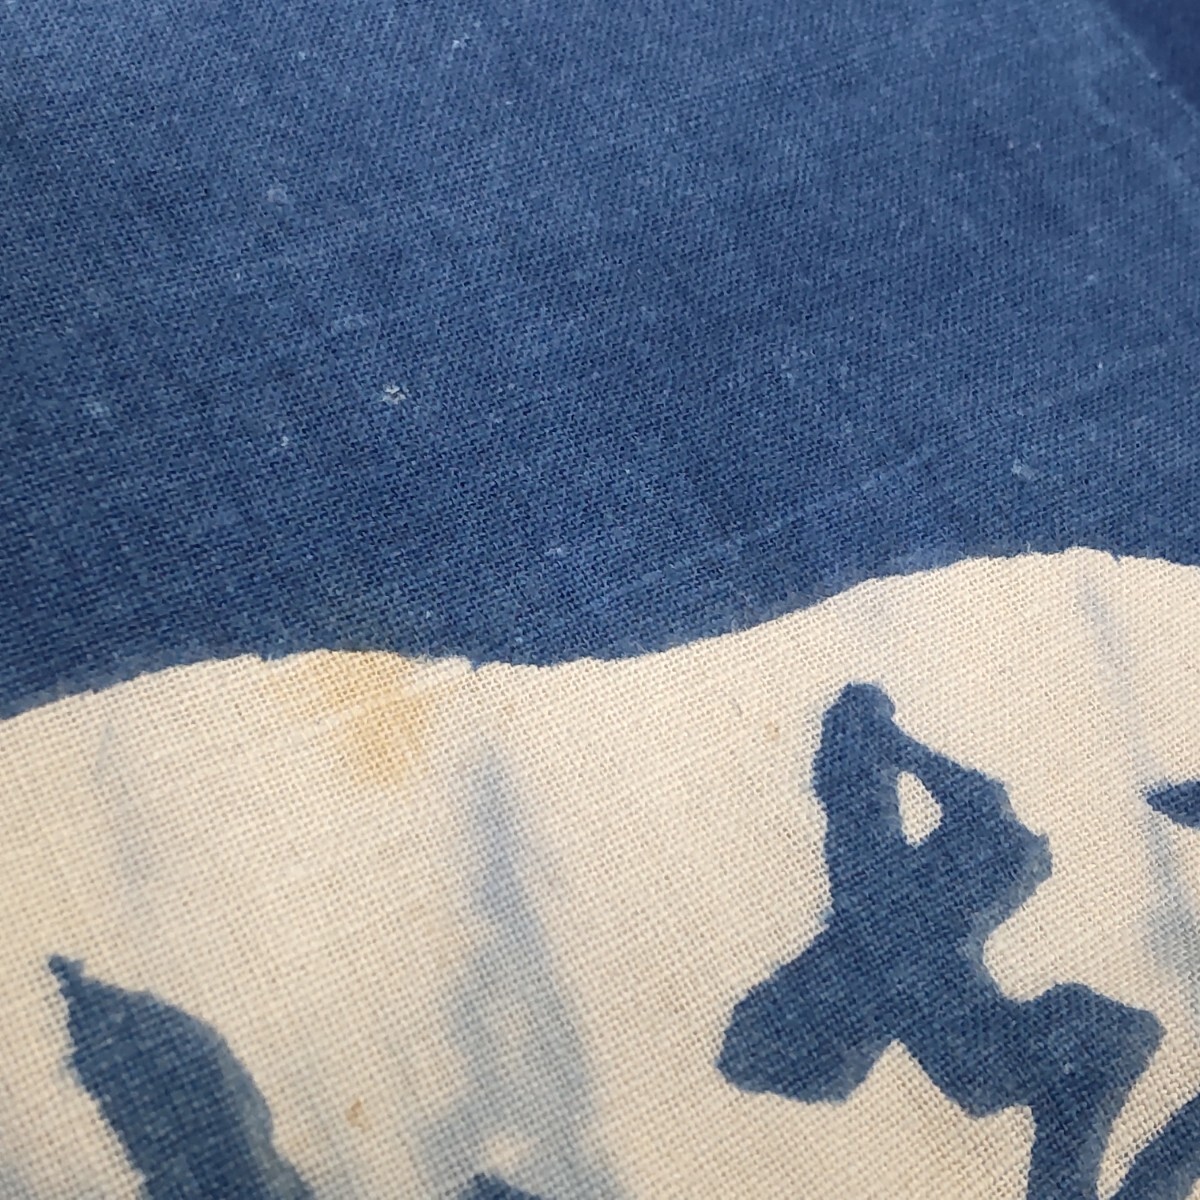 【時代布】藍染め 木綿 ちとせ 公園 約112cm 生地 古布 古裂 アンティーク リメイク素材 A-786_画像7